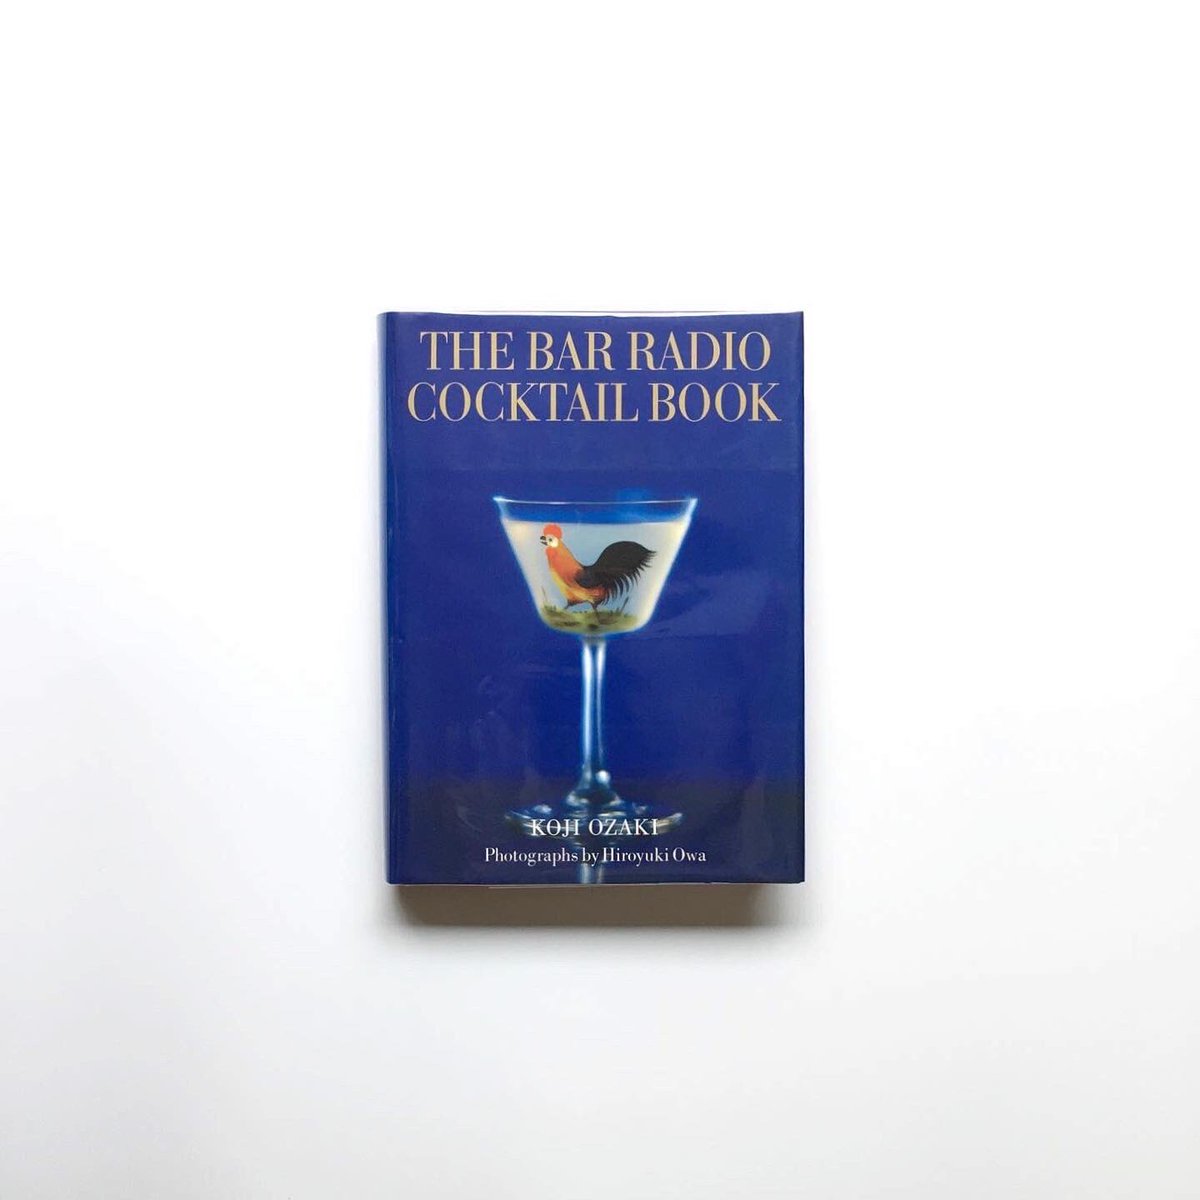 Dessin デッサン The Bar Radio Cocktail Book Signed バー ラジオの カクテル レシピ集 Cocktail 雄鶏の尾 の象徴的なカクテルから 美しいグラスに注がれたバーラジオのオリジナルカクテルを写真とともに紹介しています エッセイは 村上